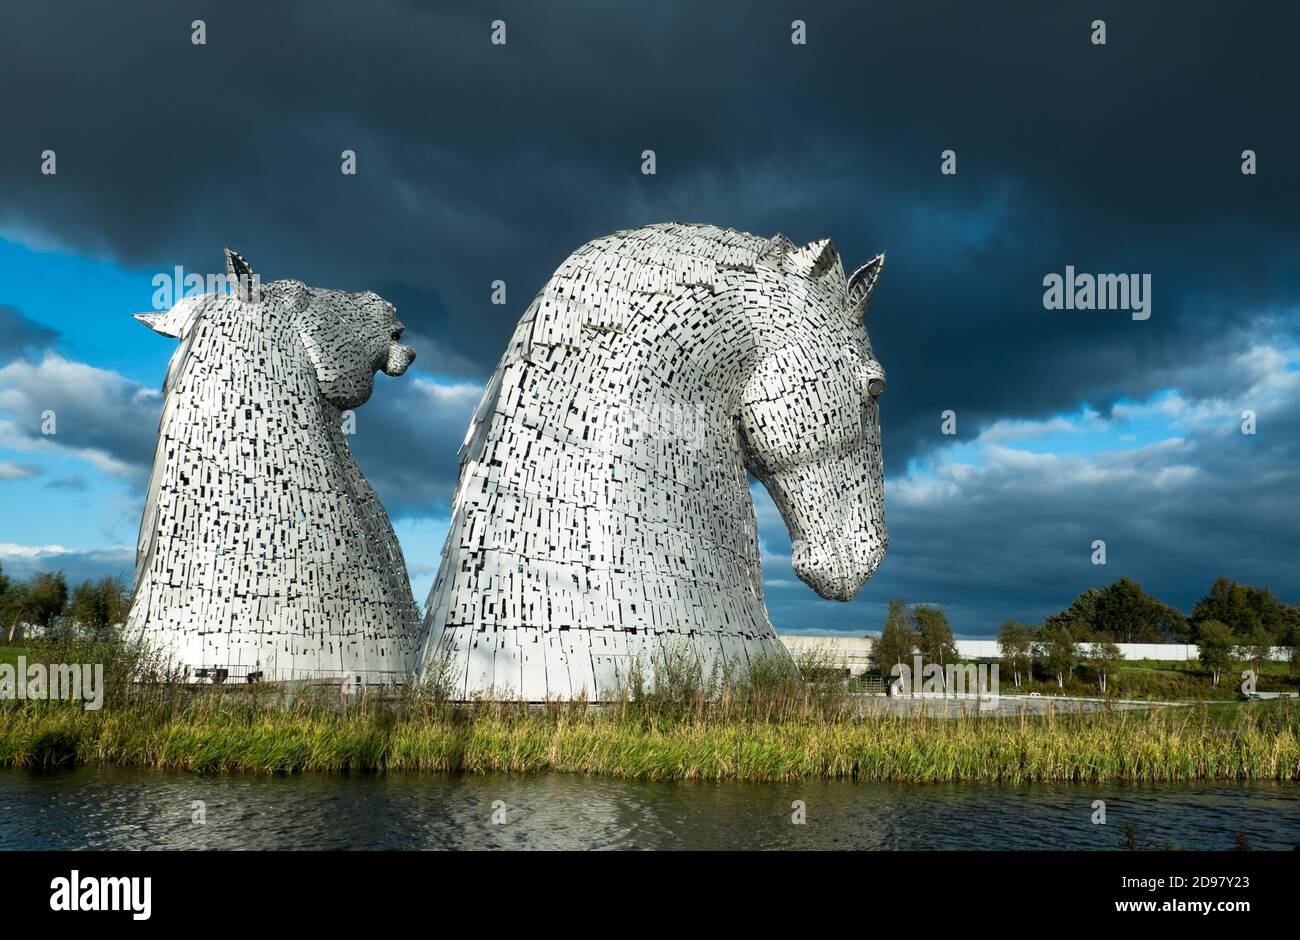 Il Kelpies Installazione di Arte pubblica e attrazioni turistiche. Enormi sculture in acciaio create dall'artista Andy Scott Stand by the Forth & Clyde Canal Foto Stock